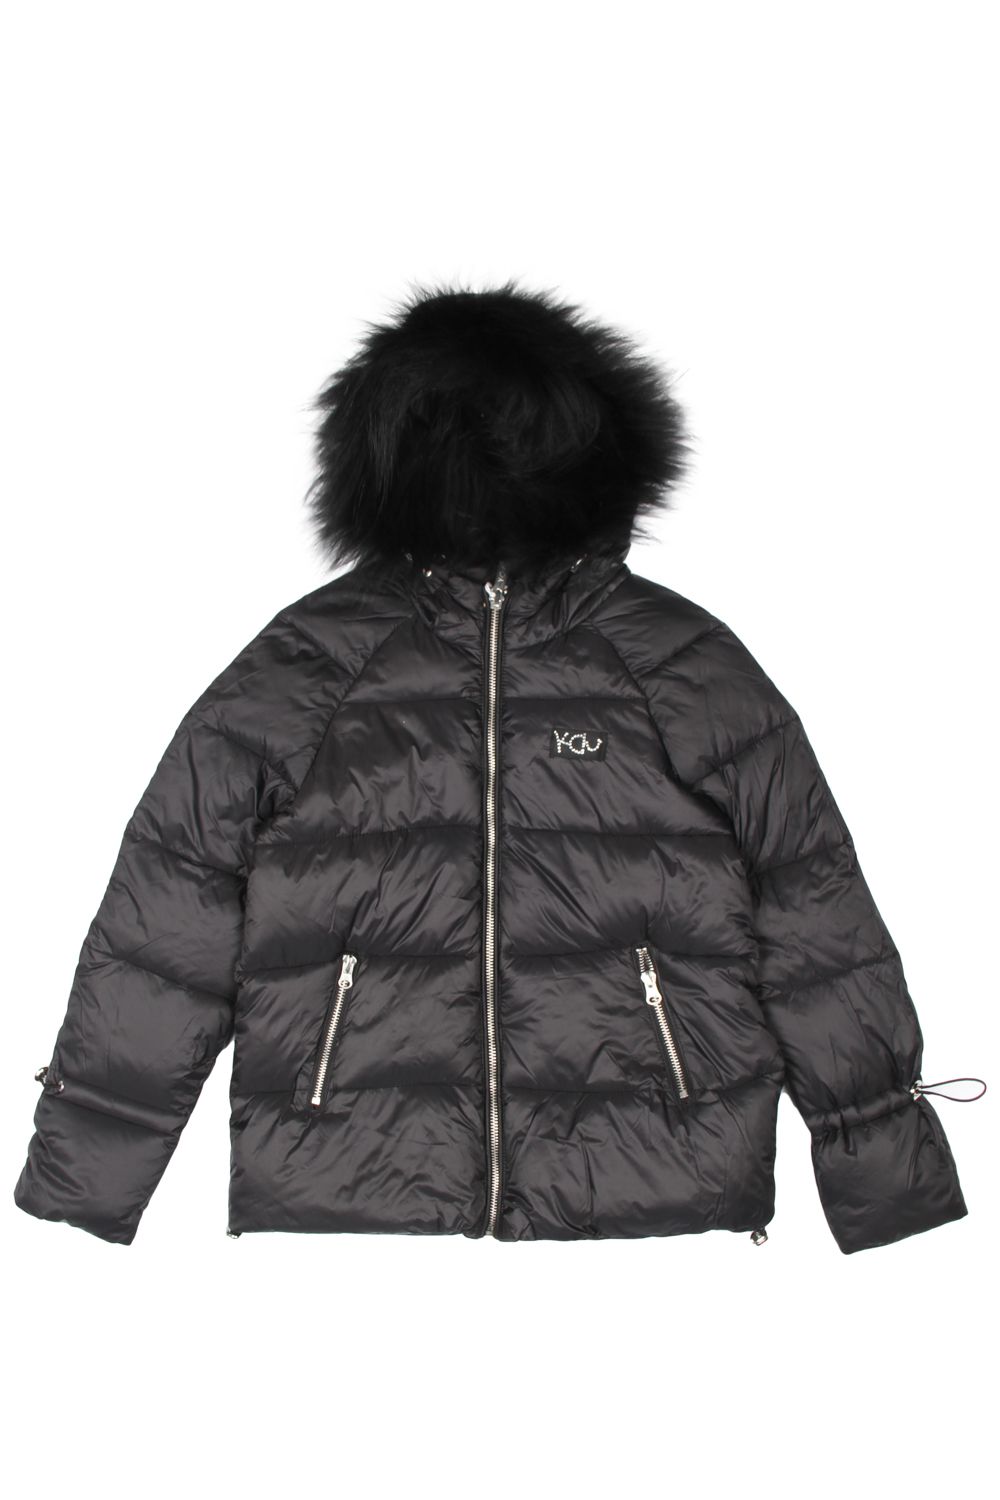 Куртка Y-clu', размер 128, цвет черный Y11486 - фото 1